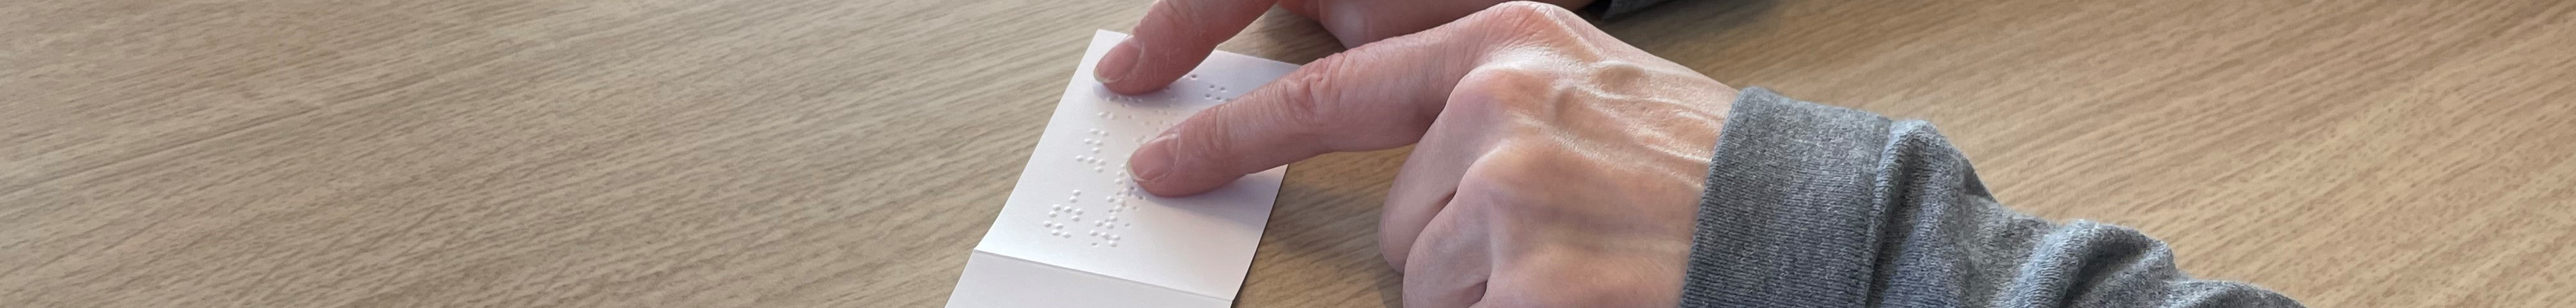 Braille-Schrift auf Zettel wird von einer Hand gelesen